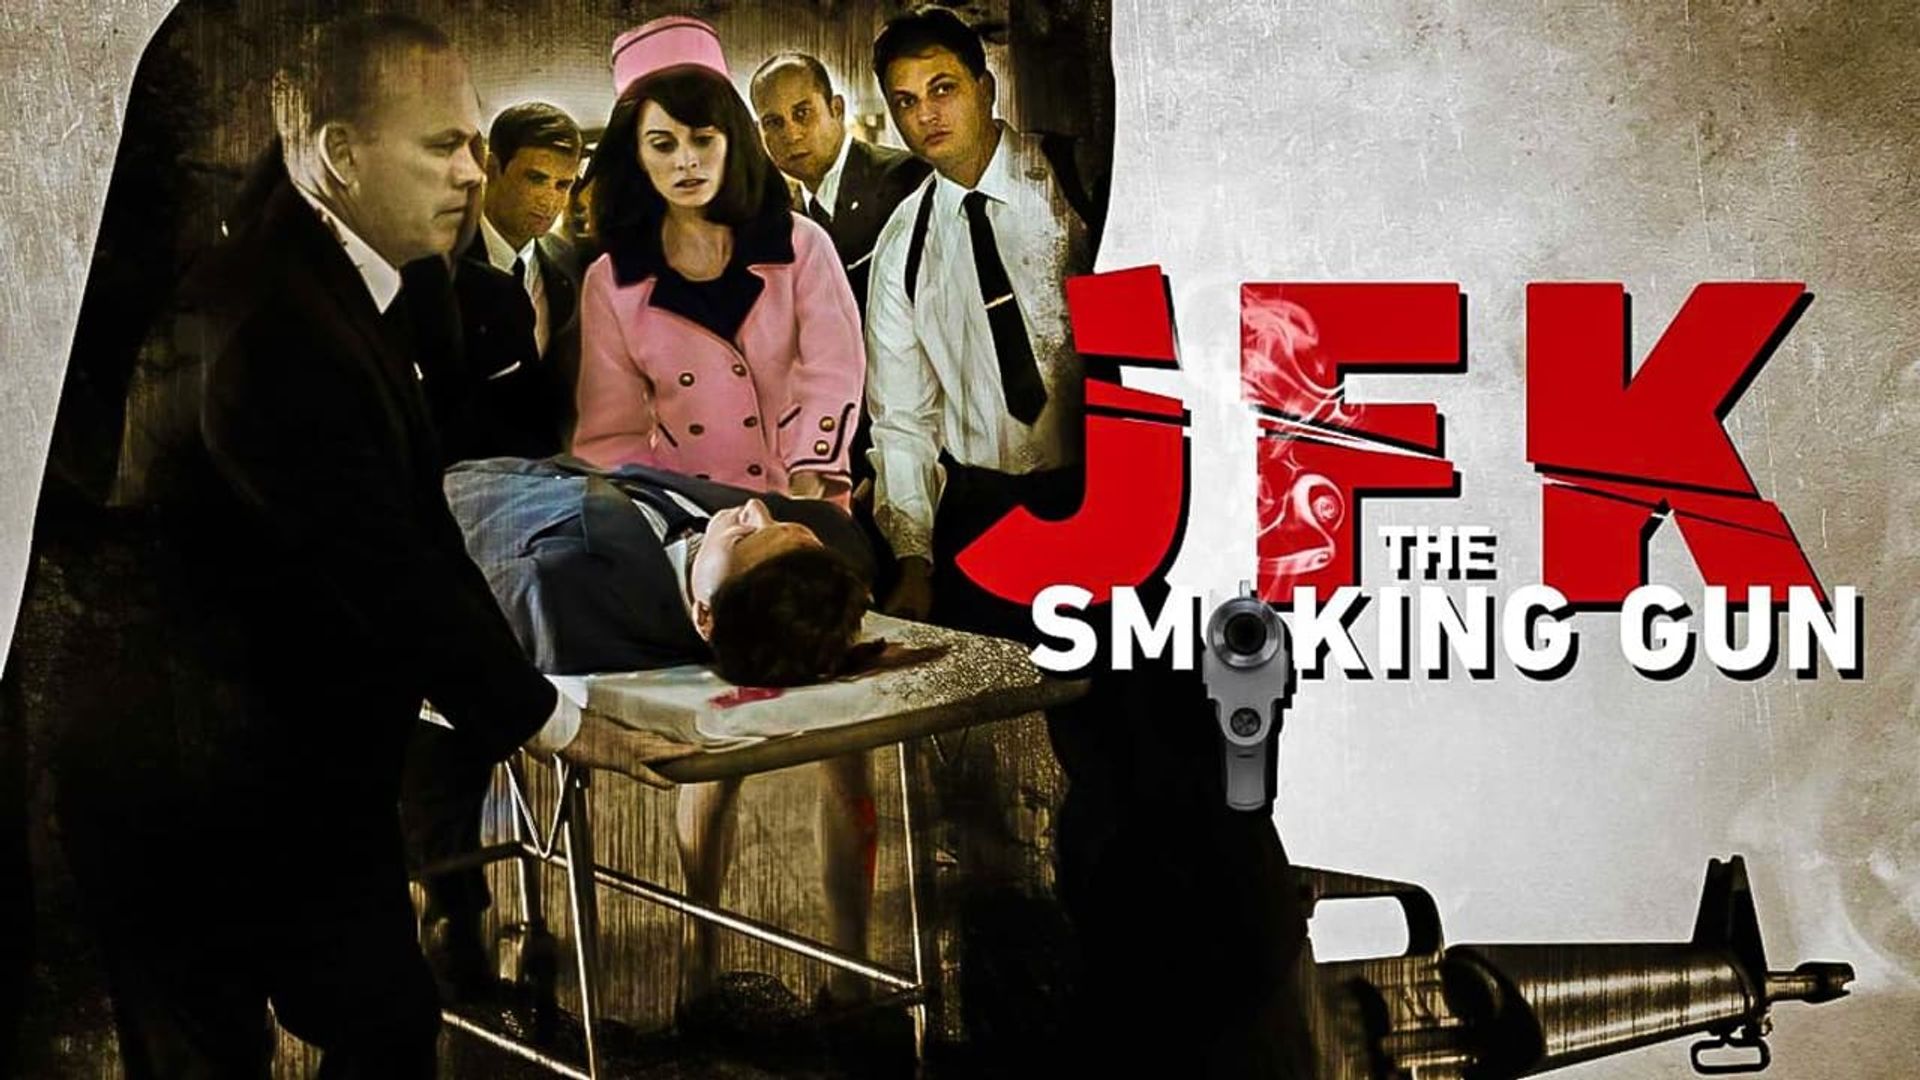 JFK: The Smoking Gun background